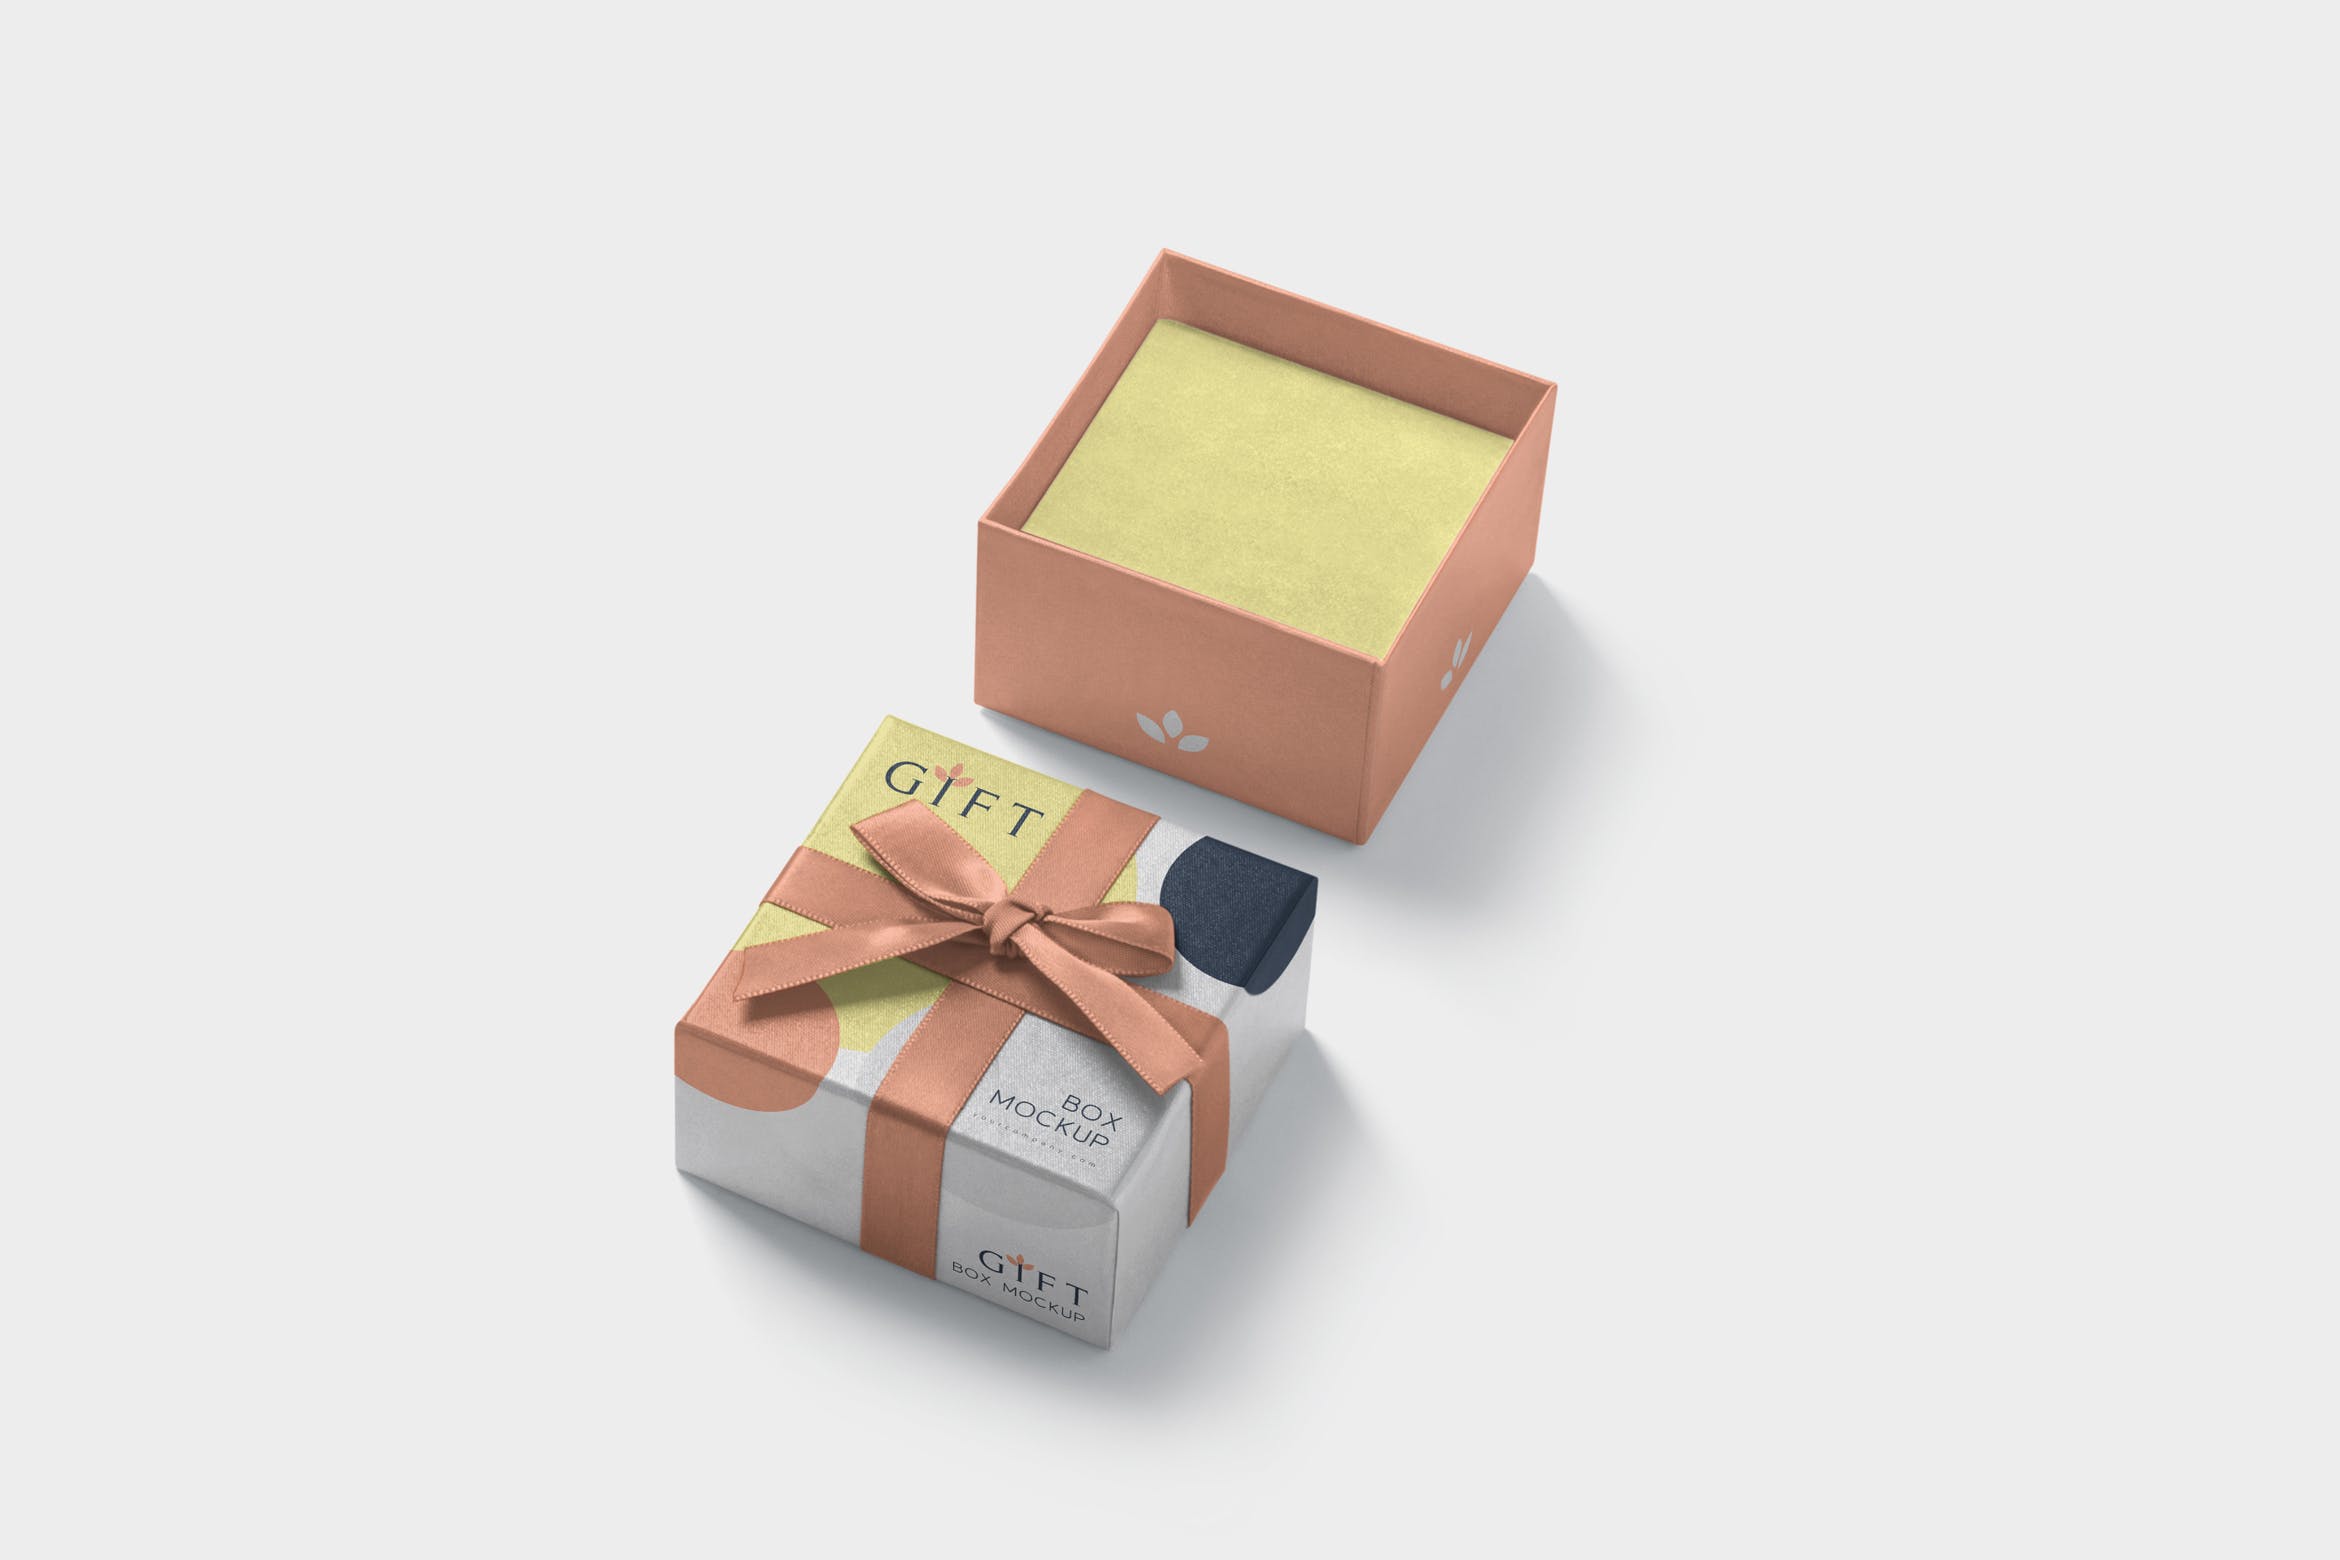 高档礼品包装盒外观设计样机模板 Gift Box Mockups插图